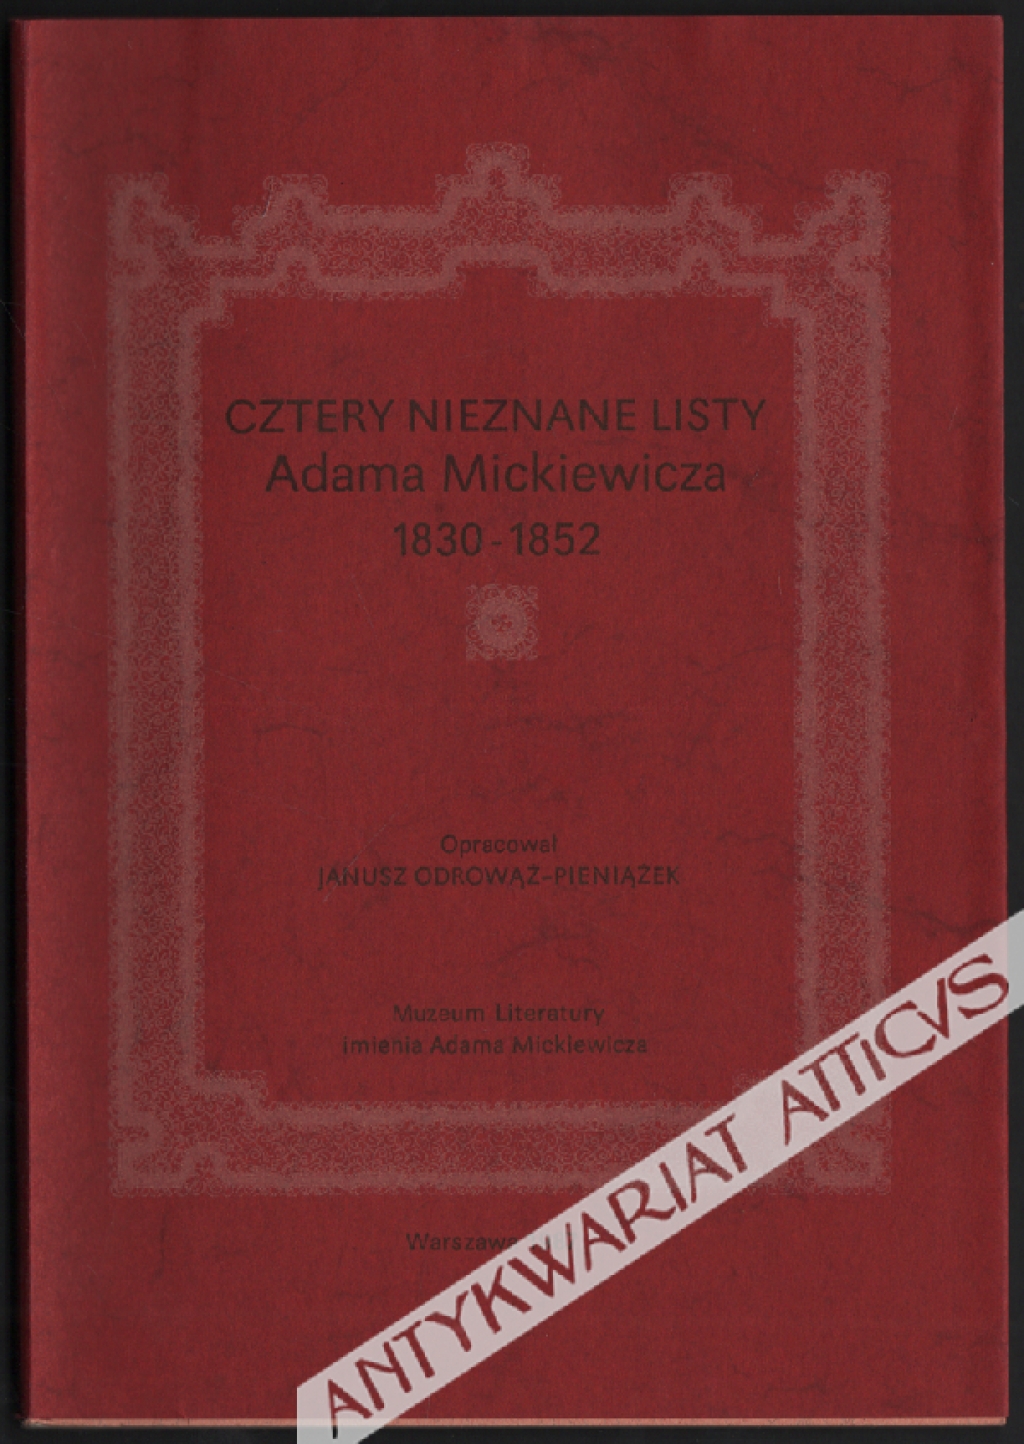 Cztery nieznane listy Adama Mickiewicza. Quatre lettres inconnus d'Adam Mickiewicz 1830-1852